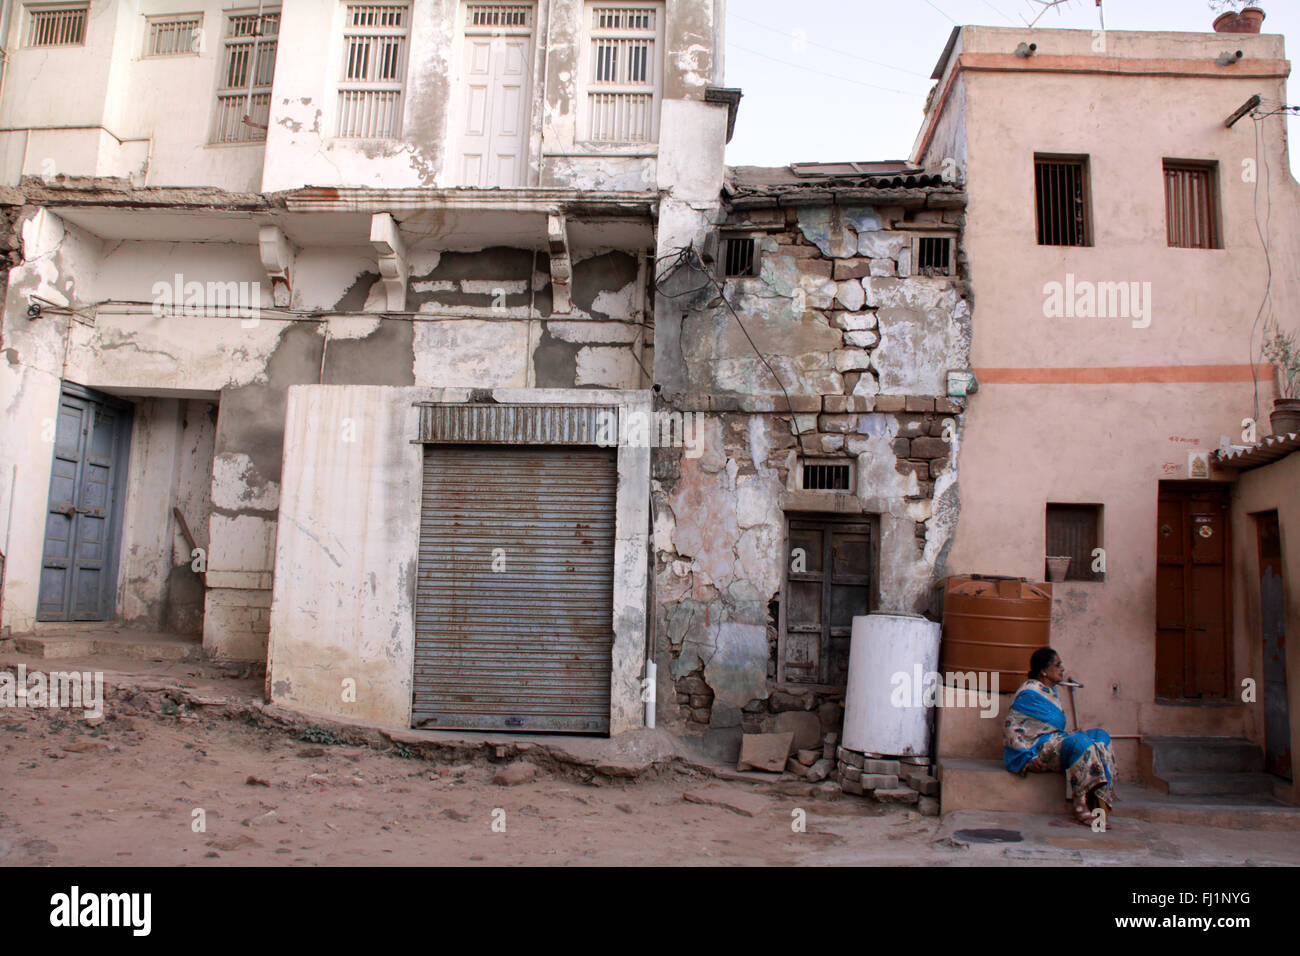 Vieilles maisons abandonnées délabrées de Bhuj, Gujarat - traces de séisme - Inde Banque D'Images